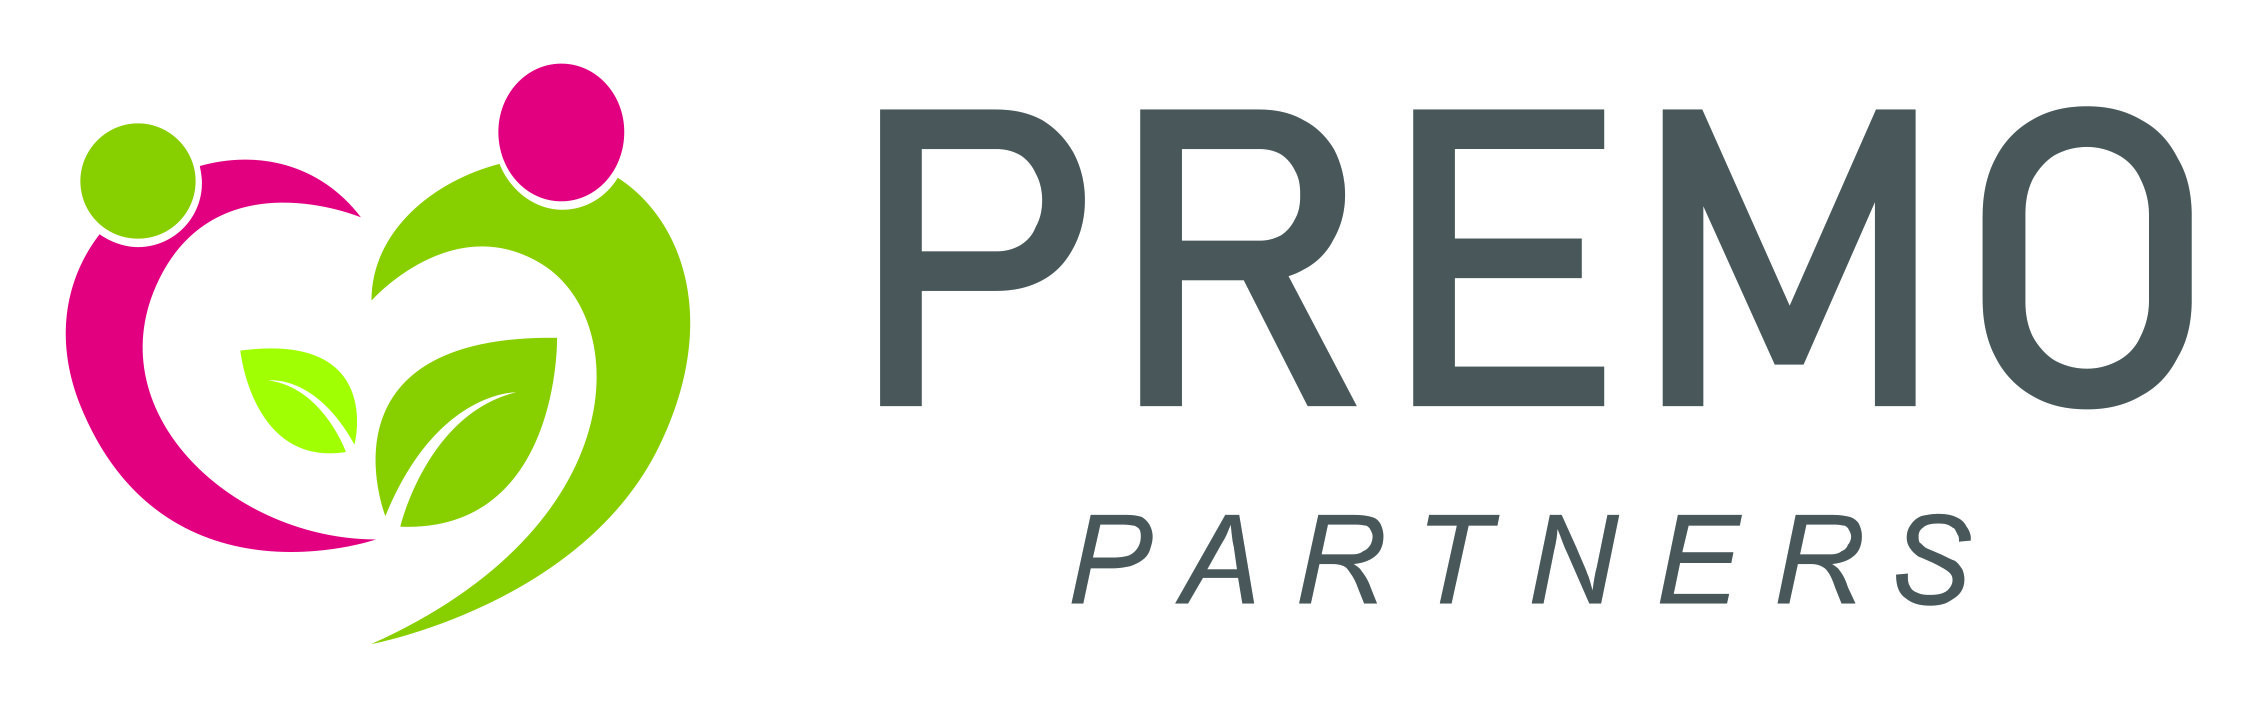 PREMO PARTNERS_logo_2009.jpg